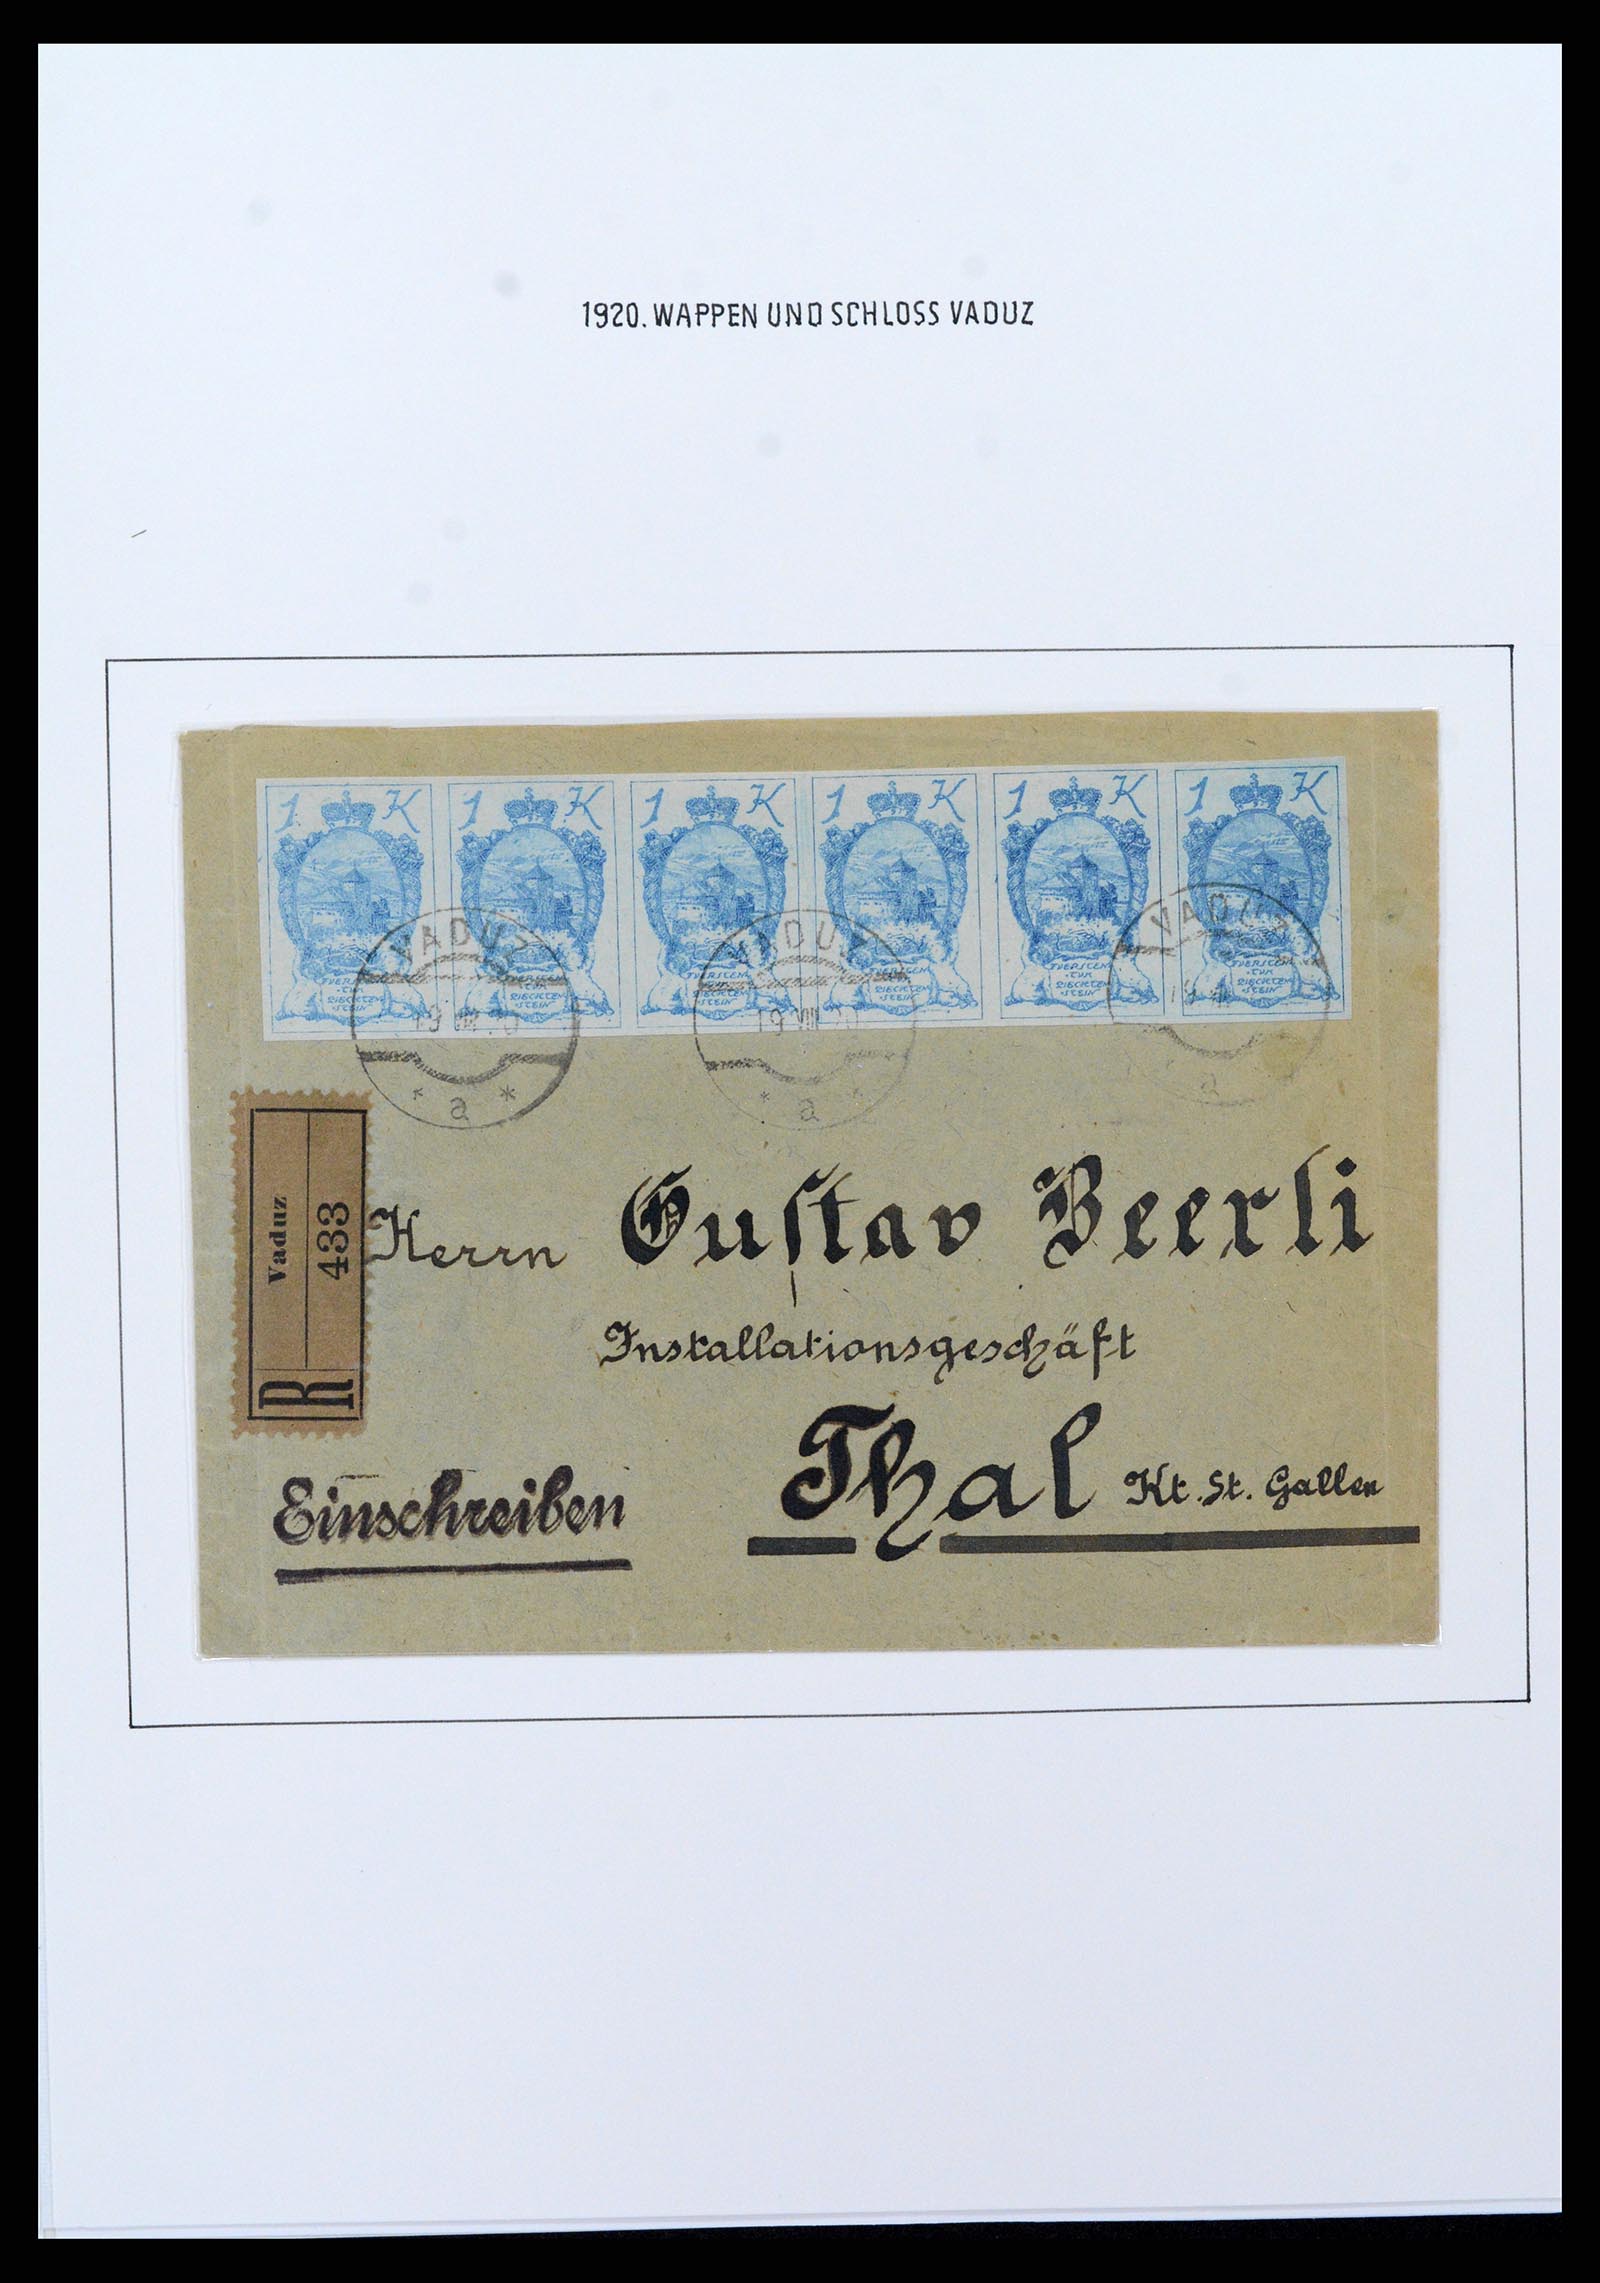 37150 0073 - Stamp collection 37150 Liechtenstein supercollection 1912-1962.